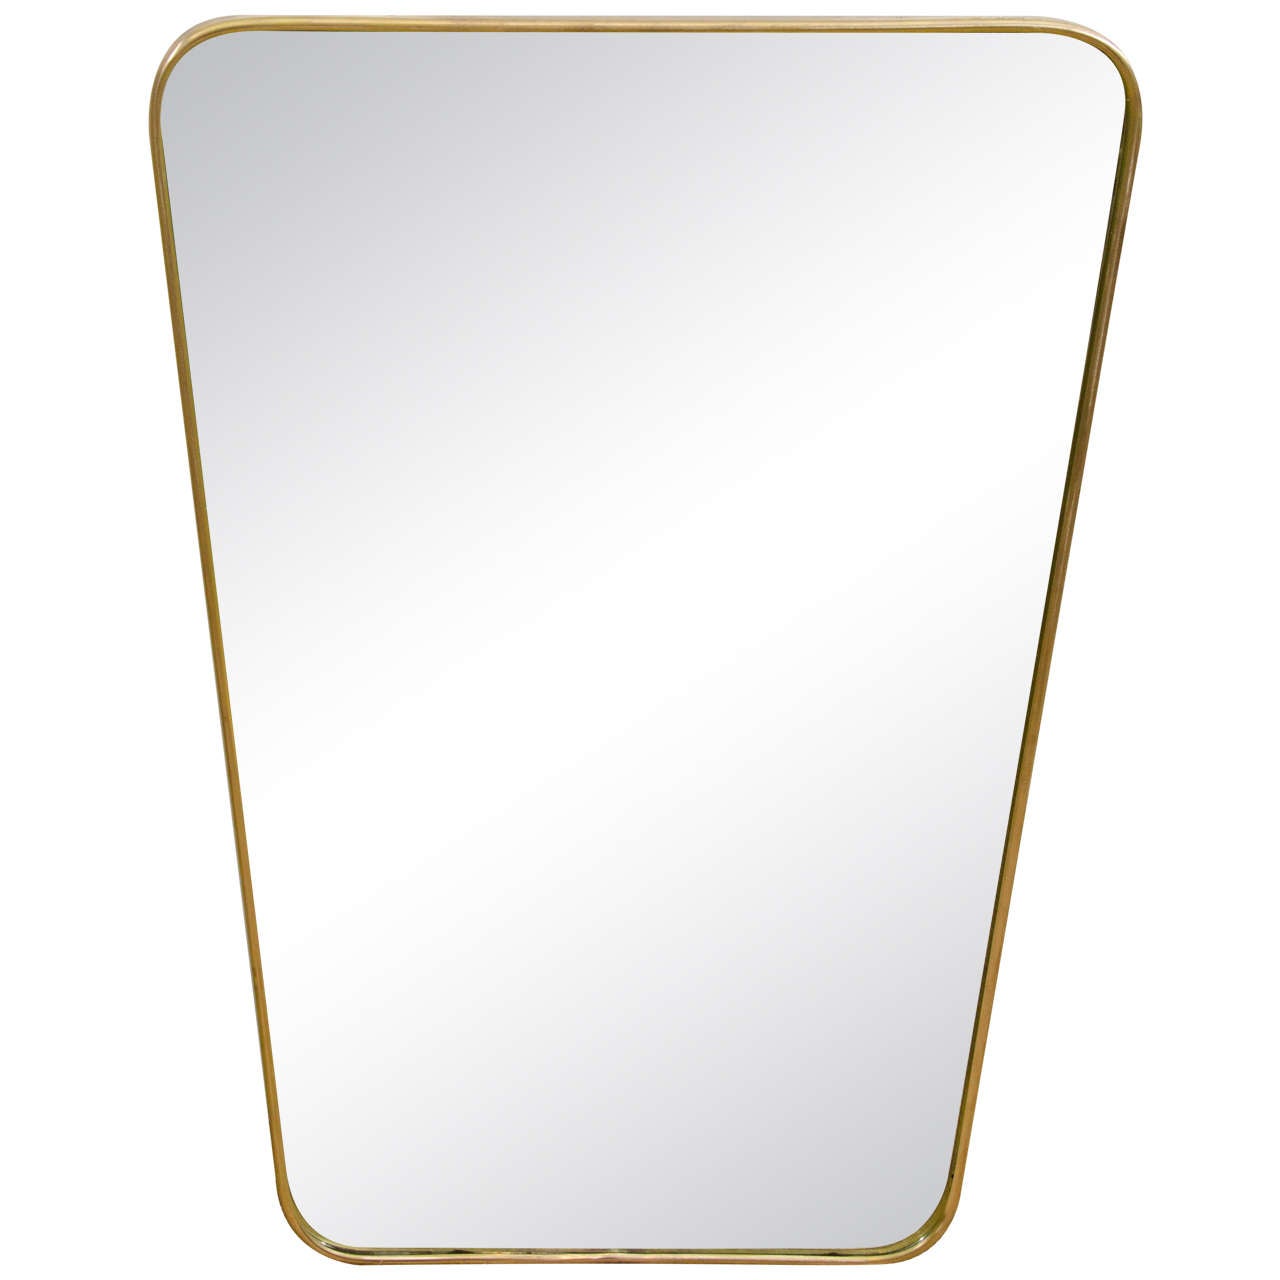 Italian Modernist 1950s Brass Framed Mirror